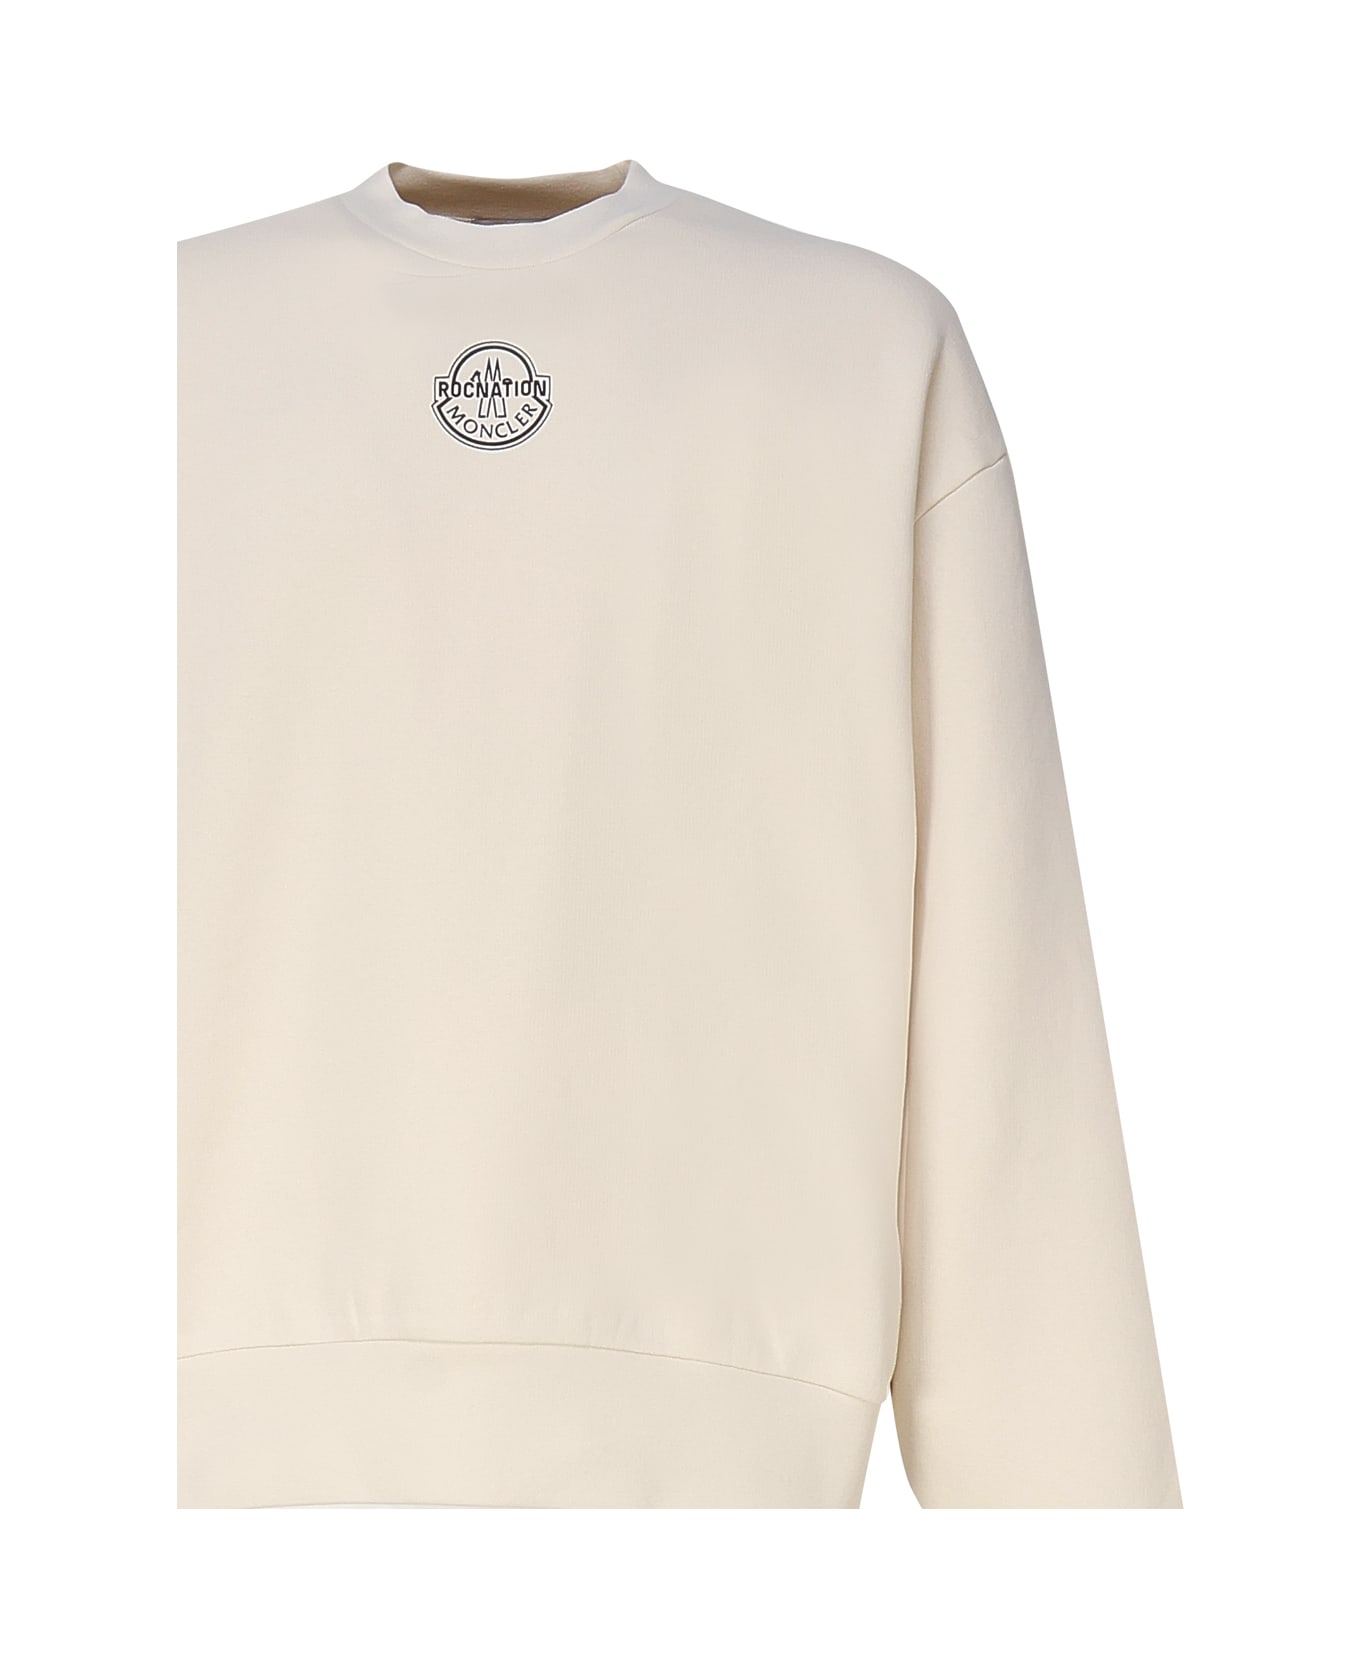 Moncler Genius Logoed Sweatshirt - White フリース